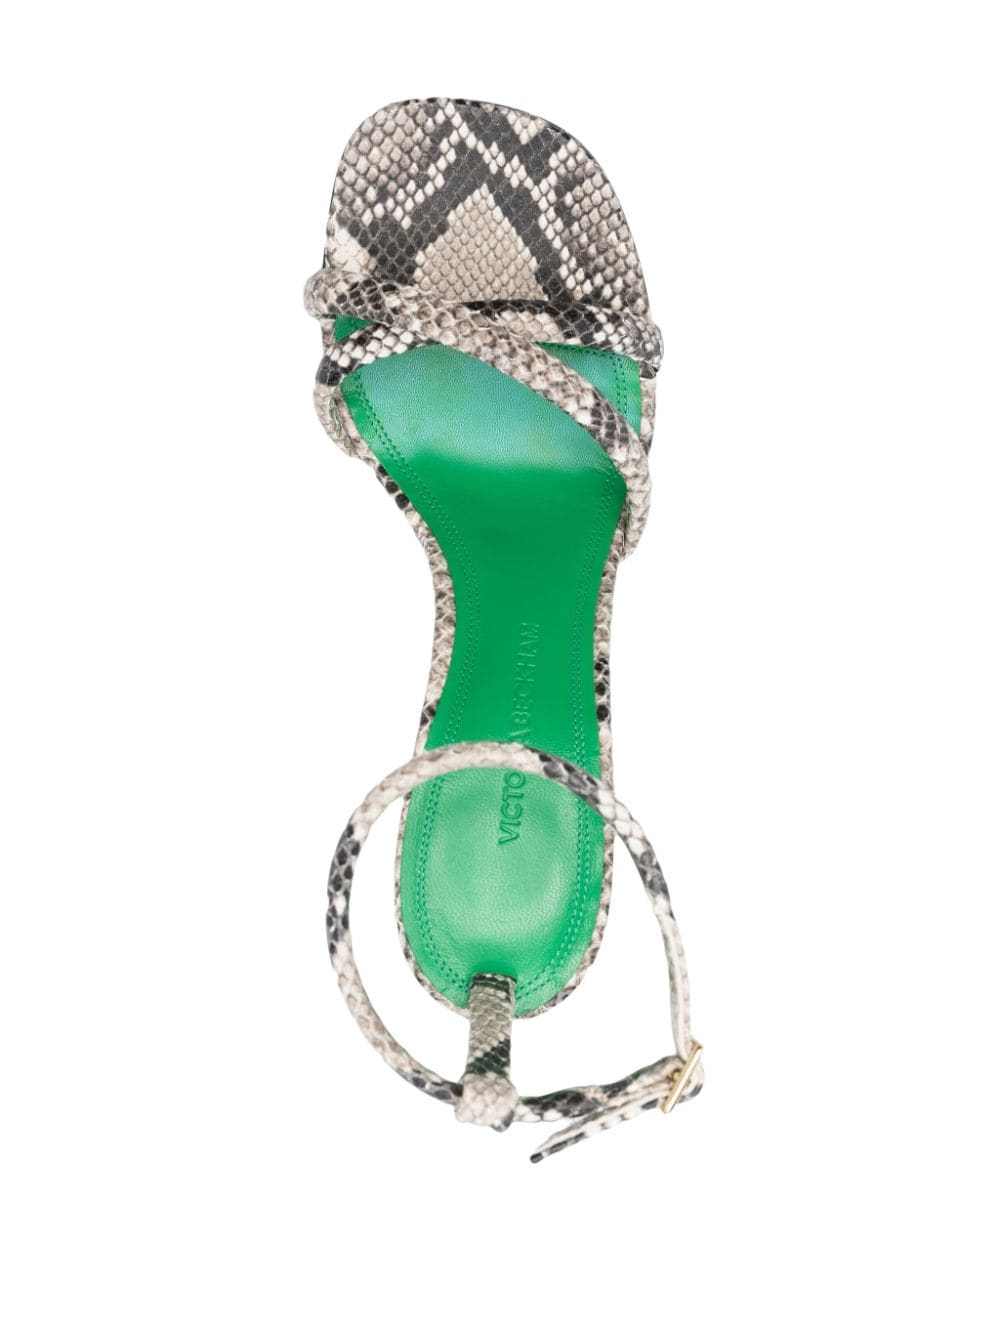 Shop Victoria Beckham 100mm Crocodile-print Sandals In Neutrals